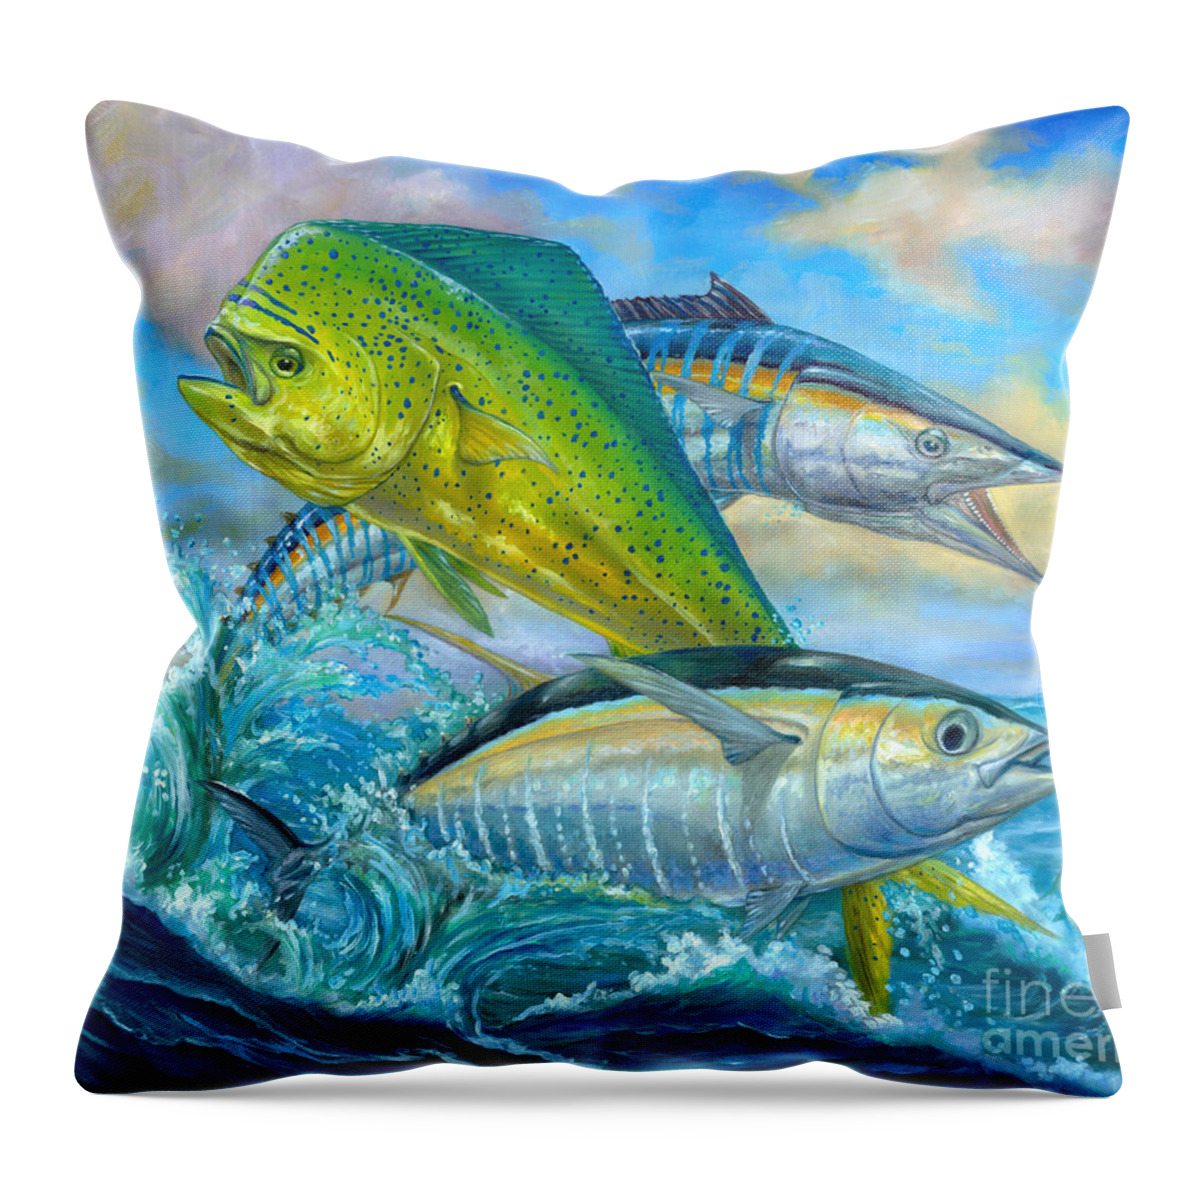 Mahi Mahi Throw Pillow featuring the painting Wahoo Mahi Mahi And Tuna by Terry Fox